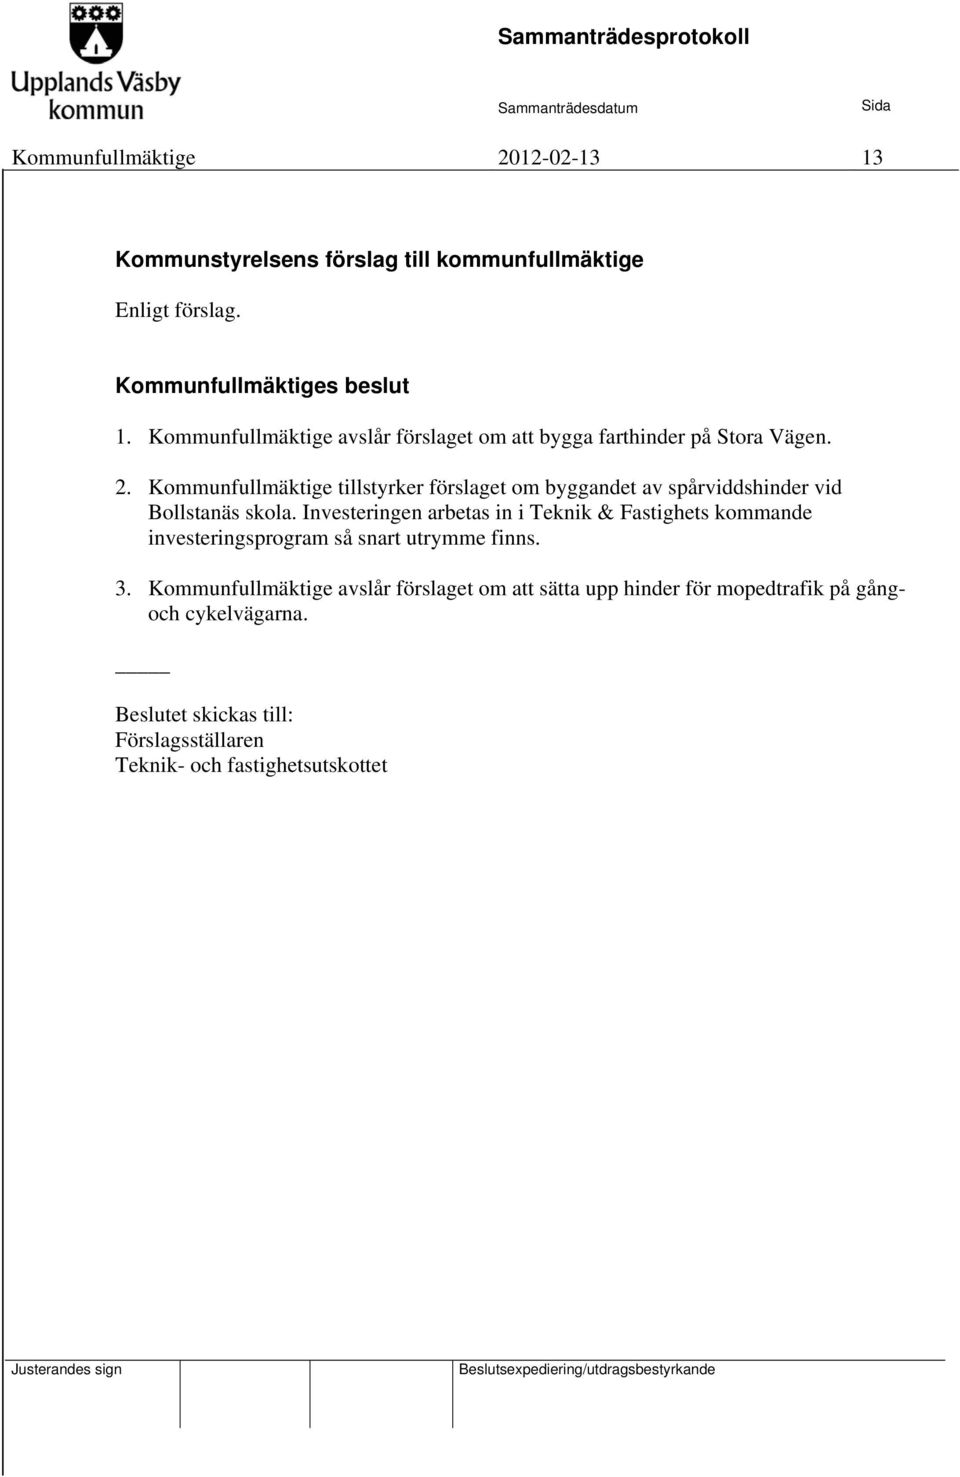 Kommunfullmäktige tillstyrker förslaget om byggandet av spårviddshinder vid Bollstanäs skola.